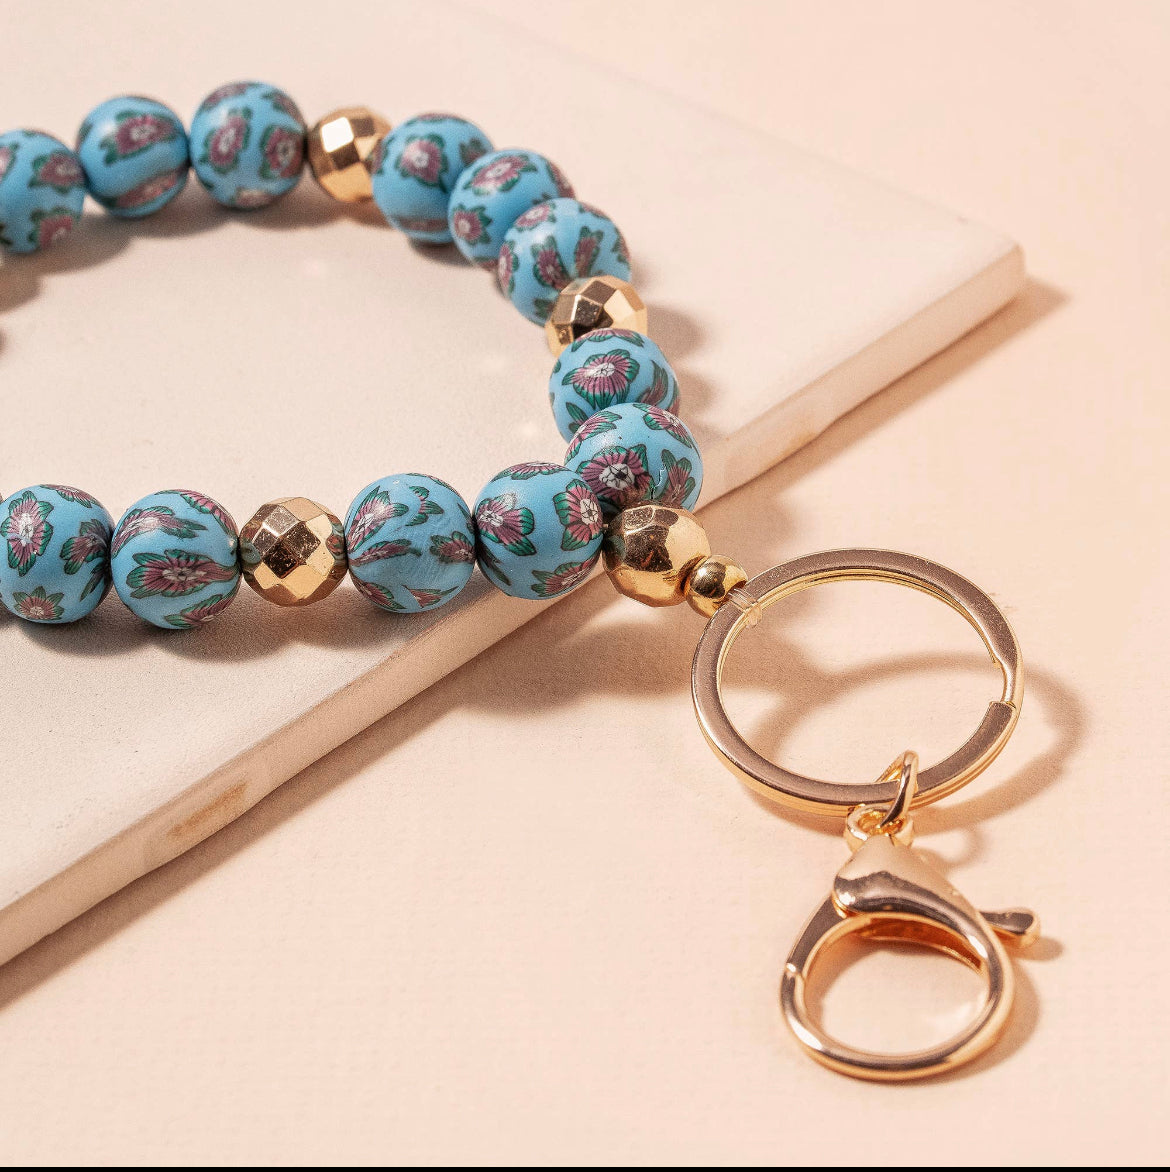 Junecarp Love Fringe Key Chain,Silicone Beaded Bracelet Keychain for Women Car Keys Home Keyring (Blue-LOVE)